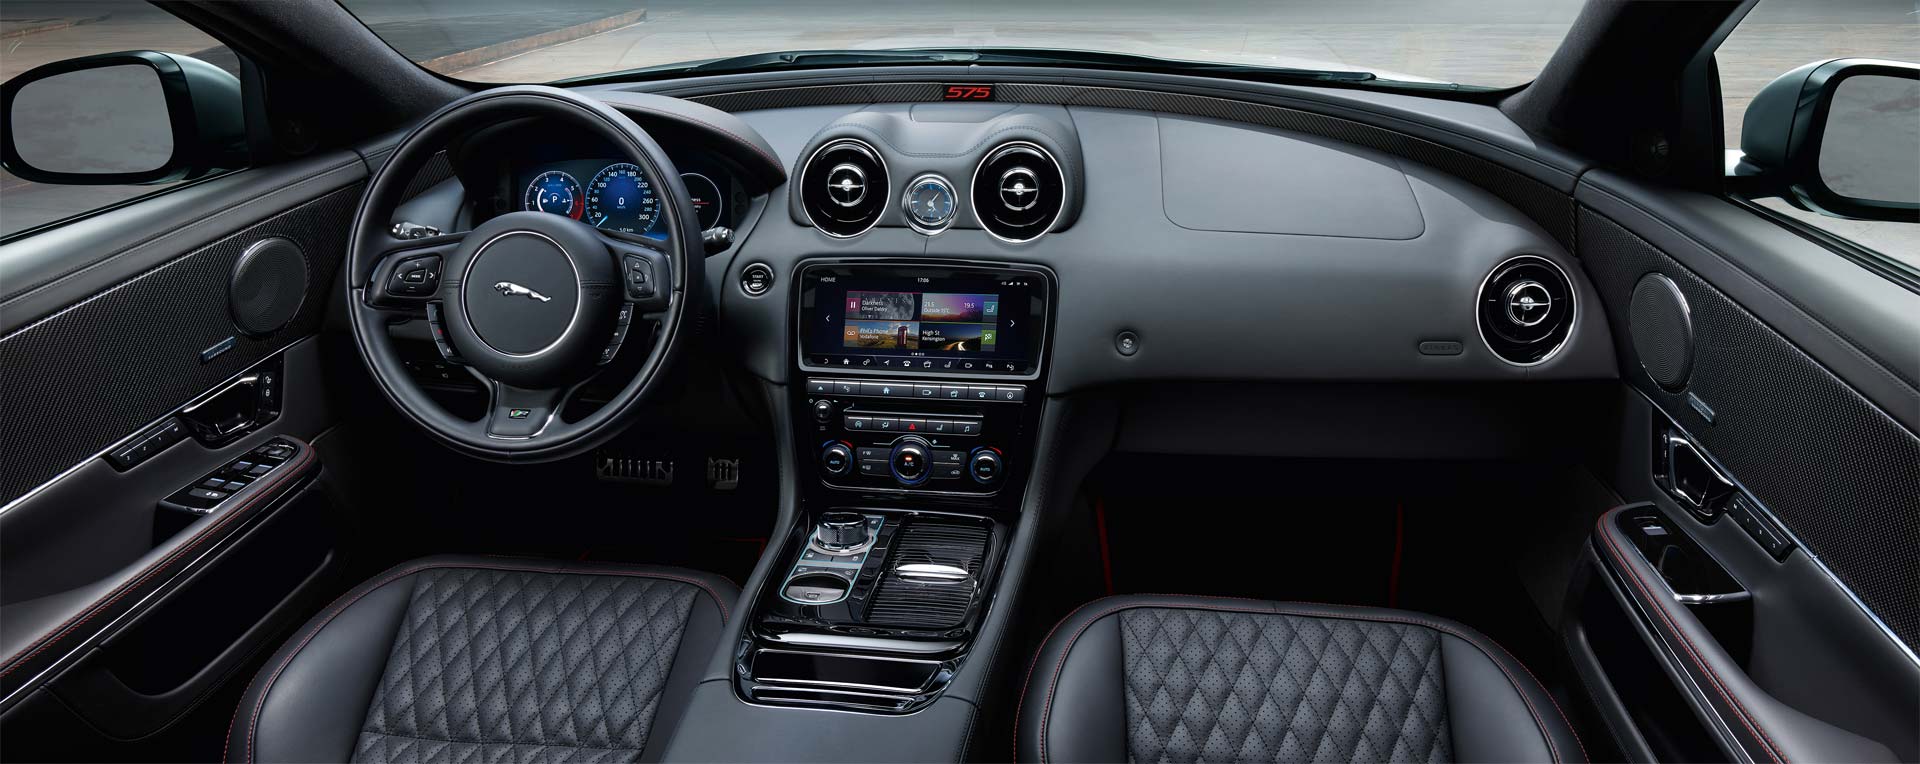 Jaguar-XJR575-interior_2